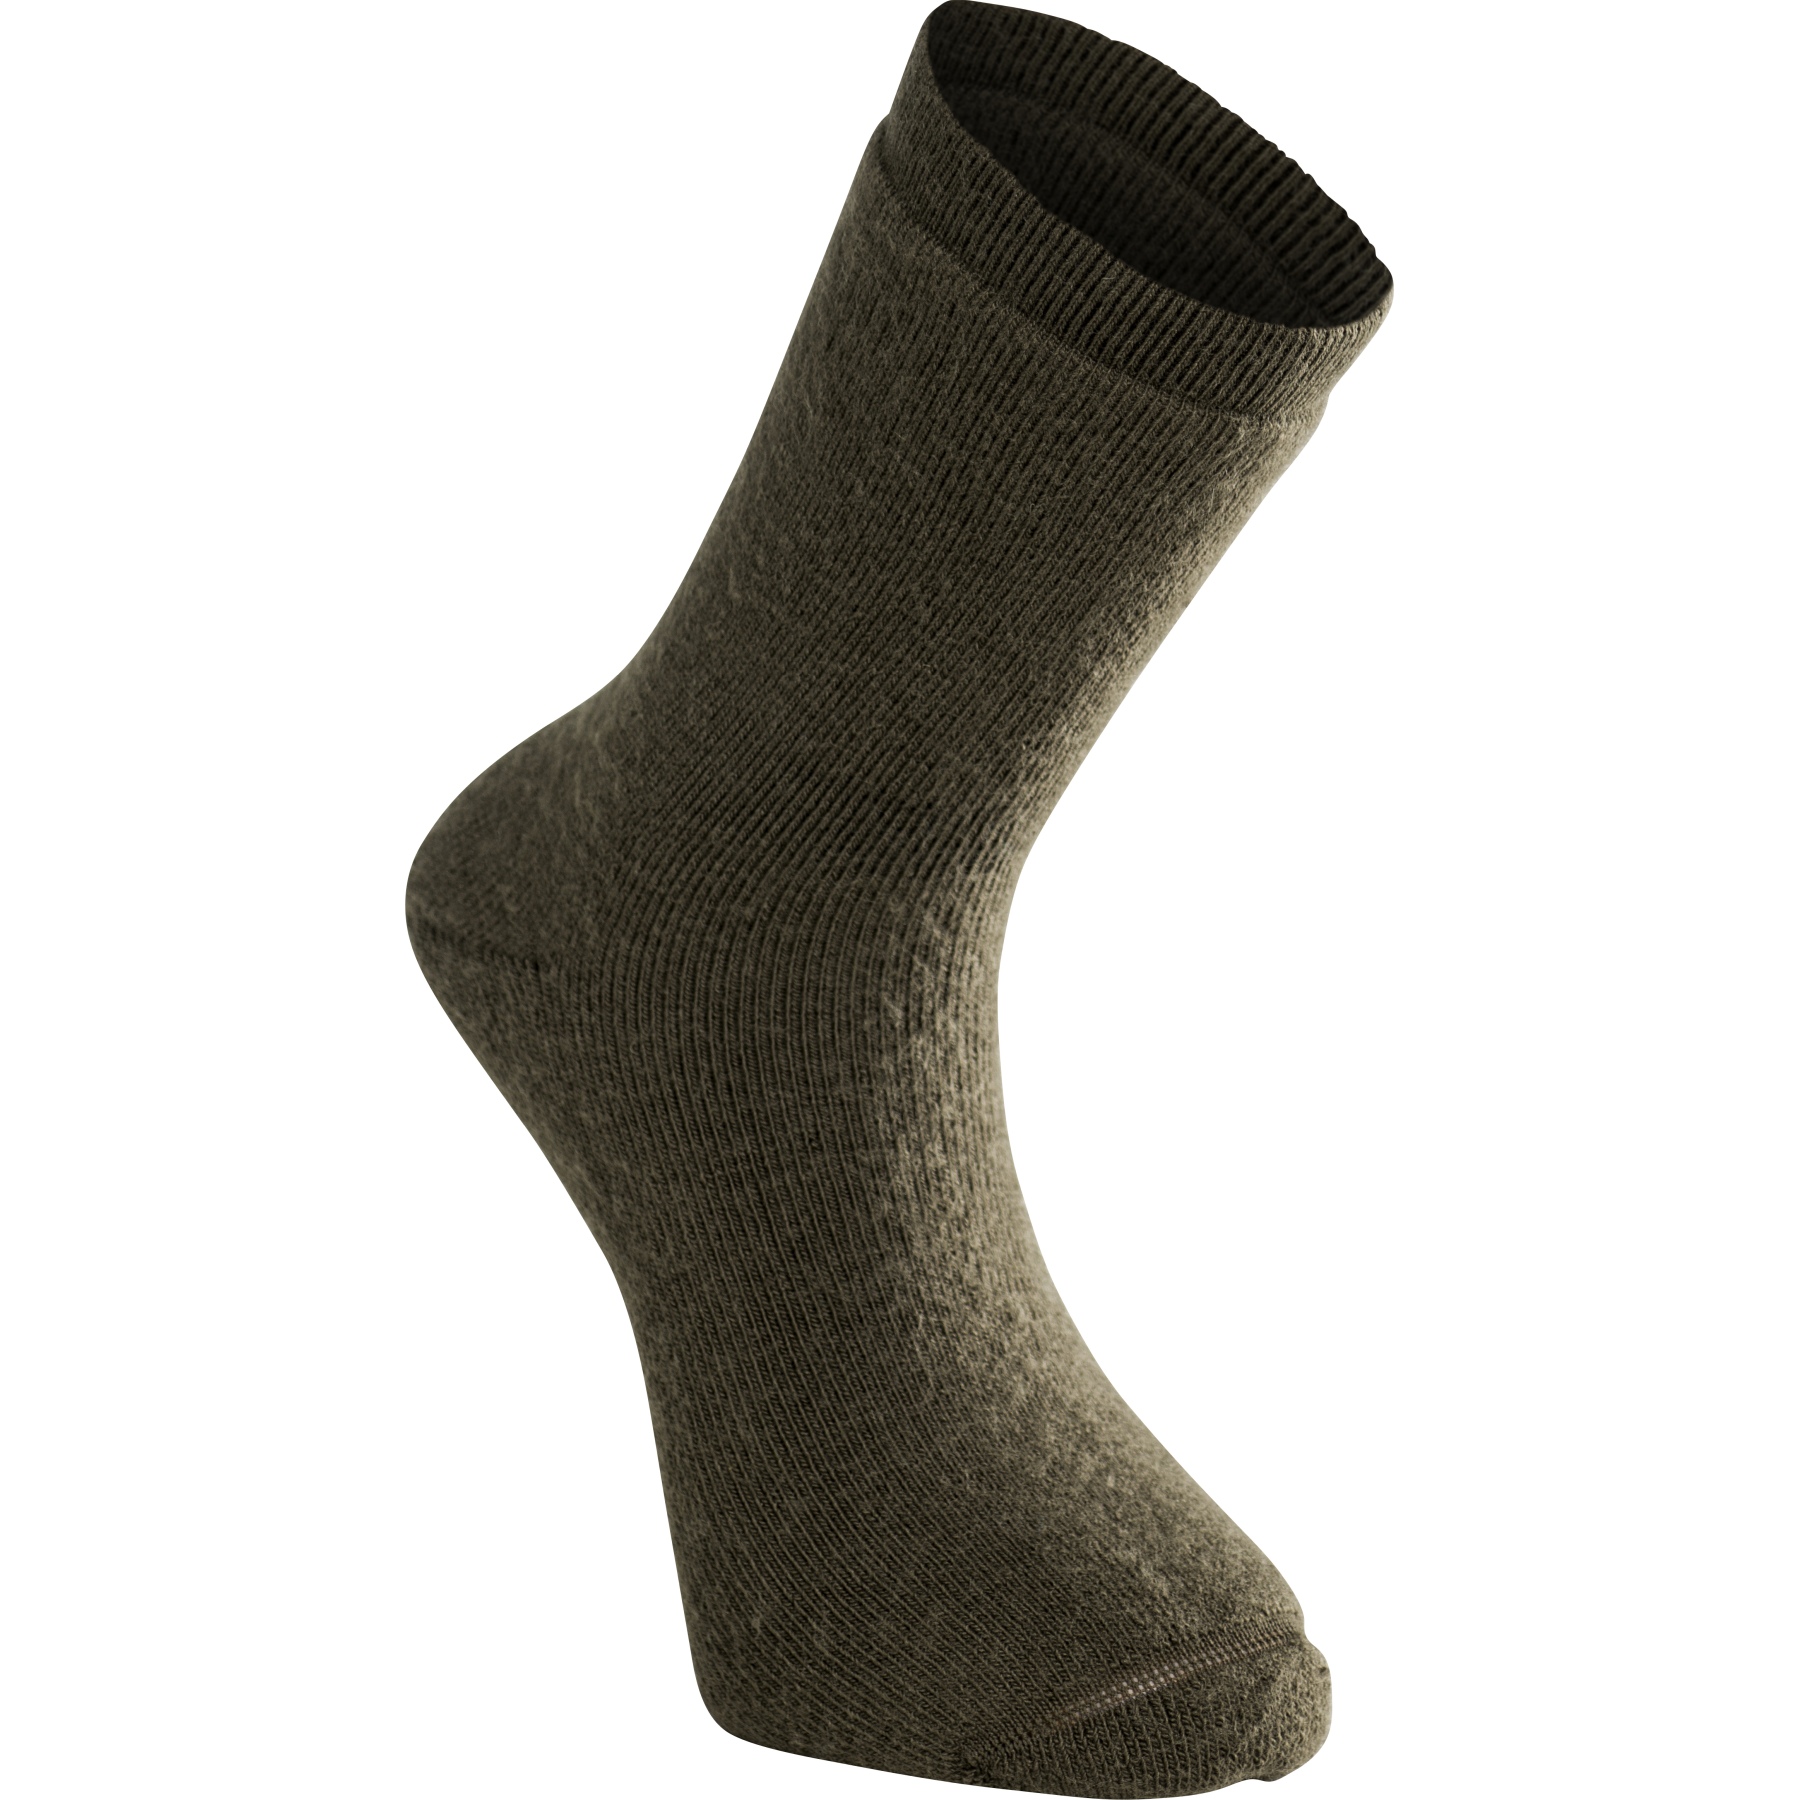 Produktbild von Woolpower Classic 400 Socken - pine green